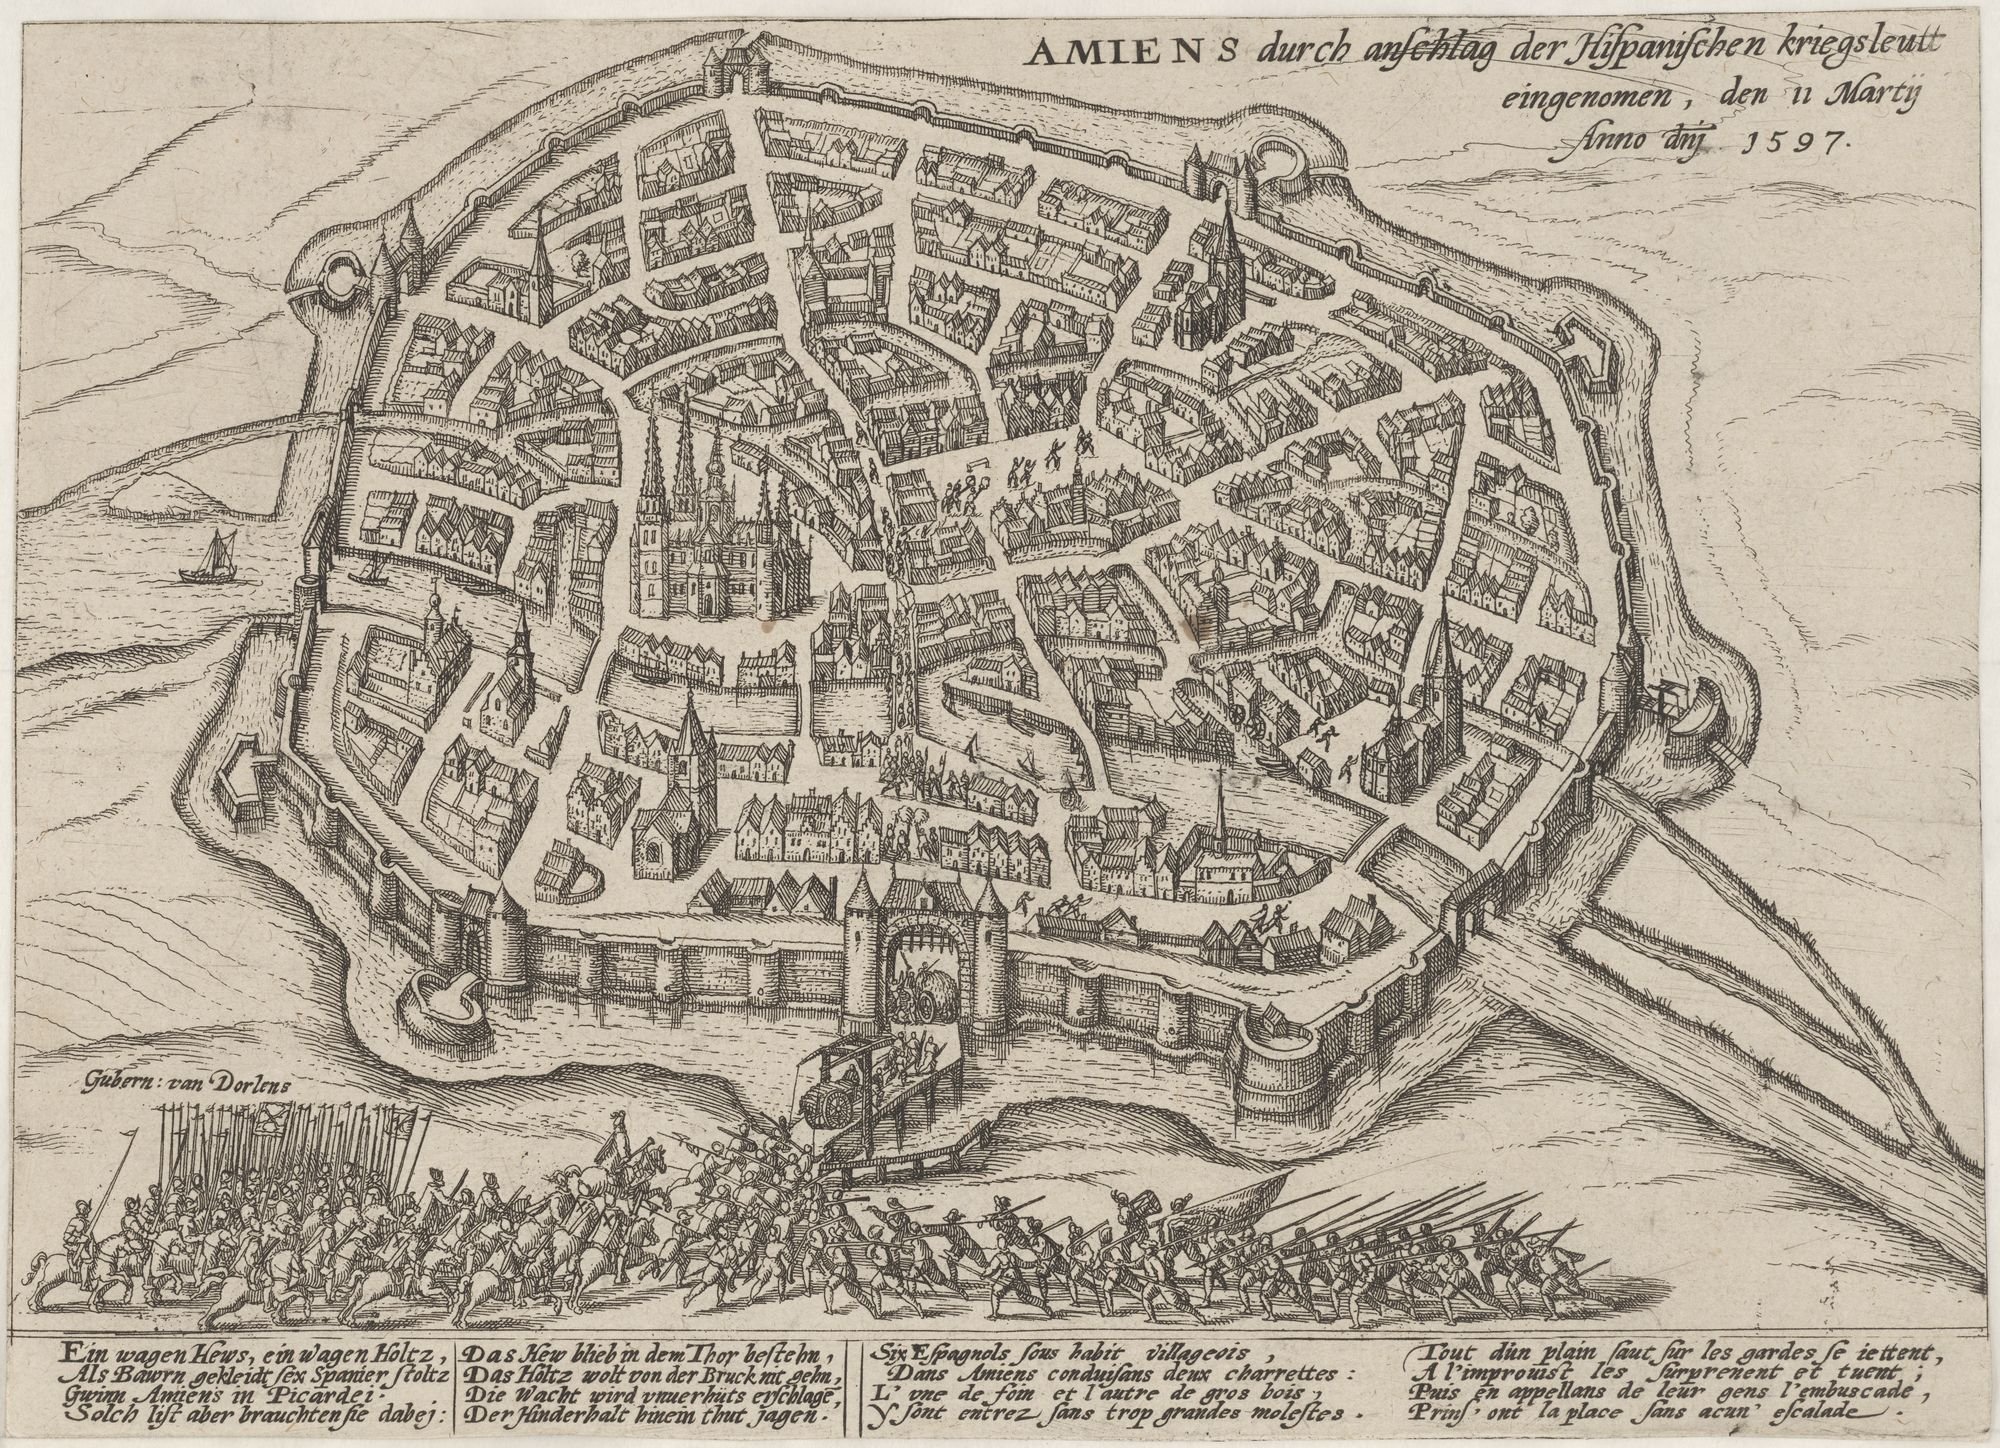 Amiens durch anschlag der Hispanischen kriegsleutt den 11 marty, Anno dnj 1597. (Kulturstiftung Sachsen-Anhalt Public Domain Mark)